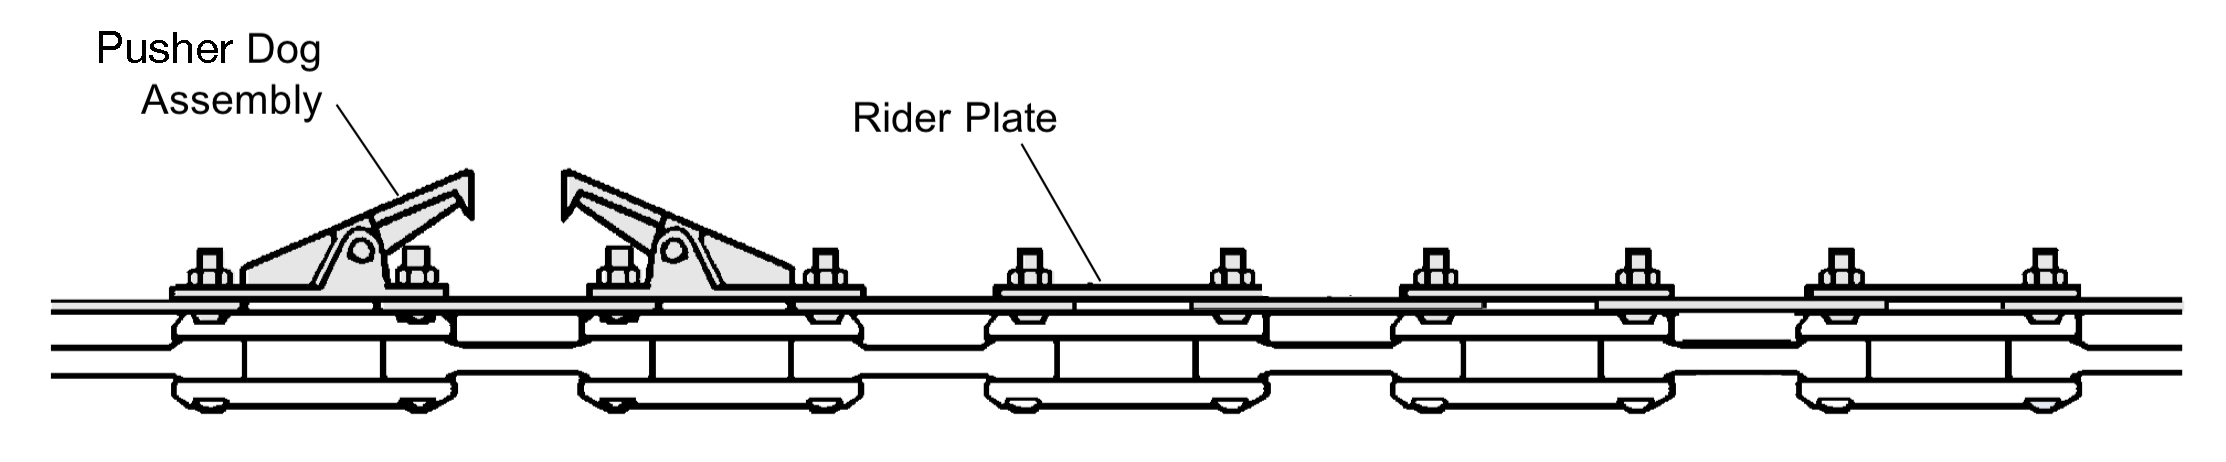 chain-on-edge conveyors